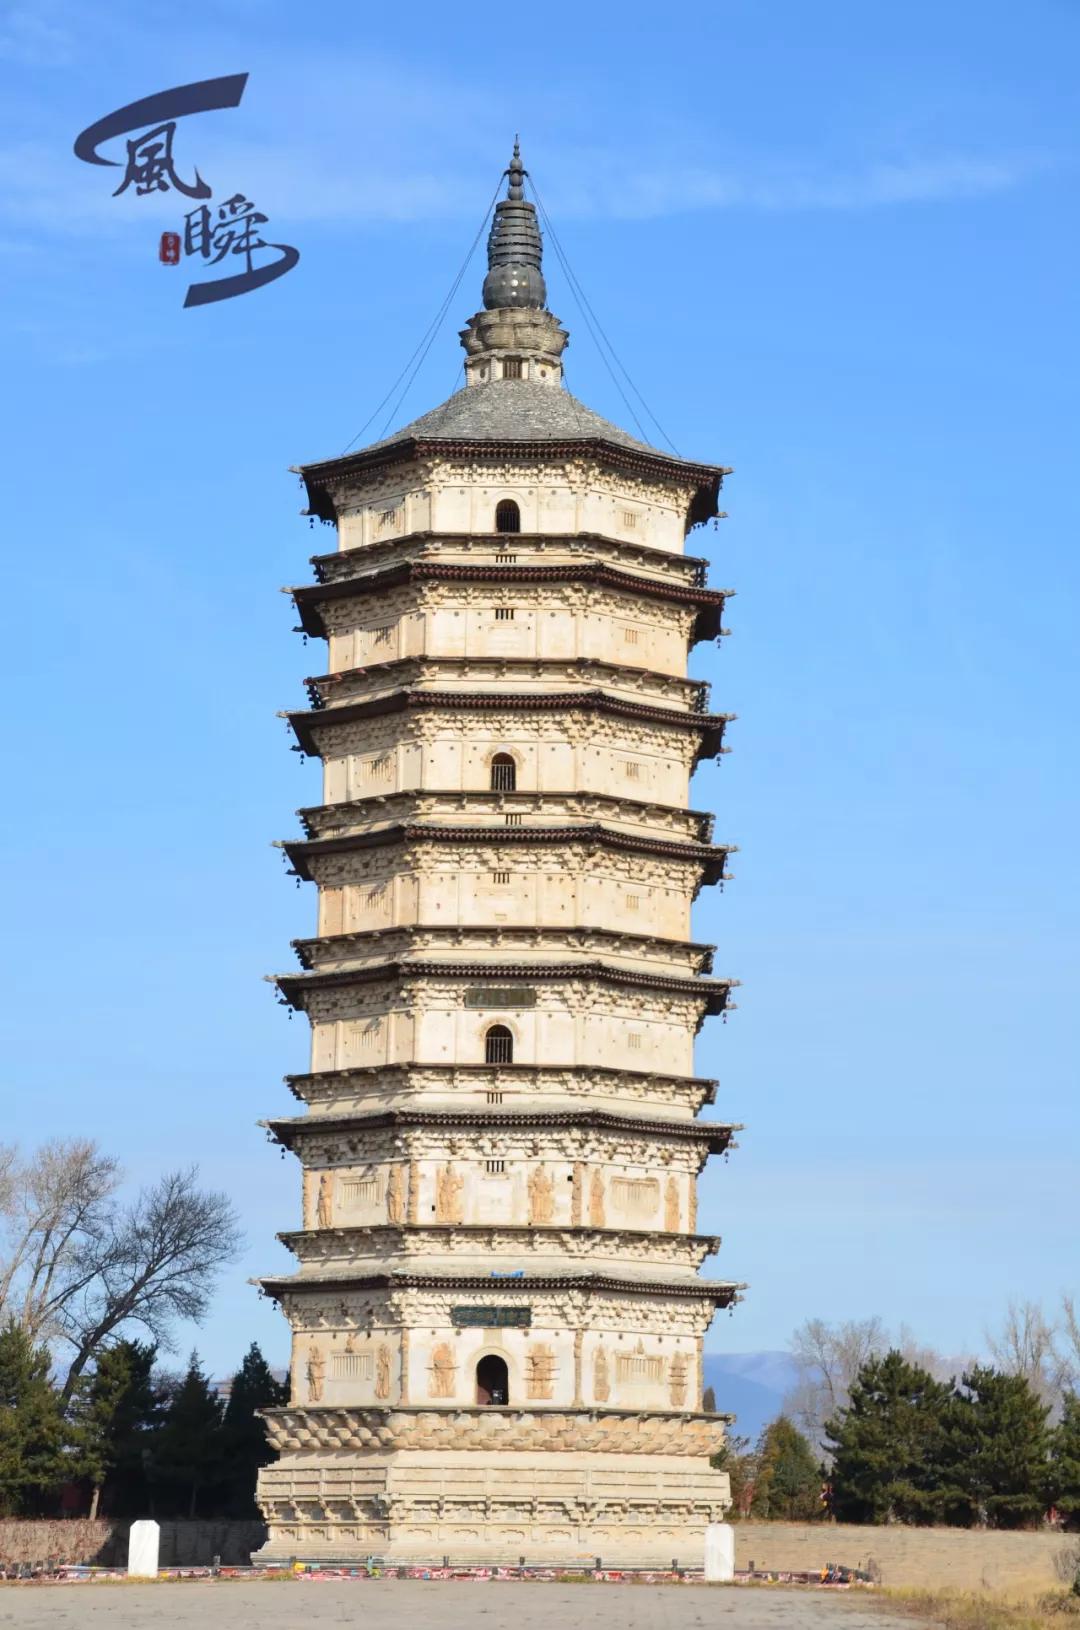 大理三塔，位于大理城约一公里处。为大理胜景之一。被称为大理古文化的象征。 三塔的主塔名叫千寻塔，高69.13米，为方形16层密檐式塔，与西安 ...